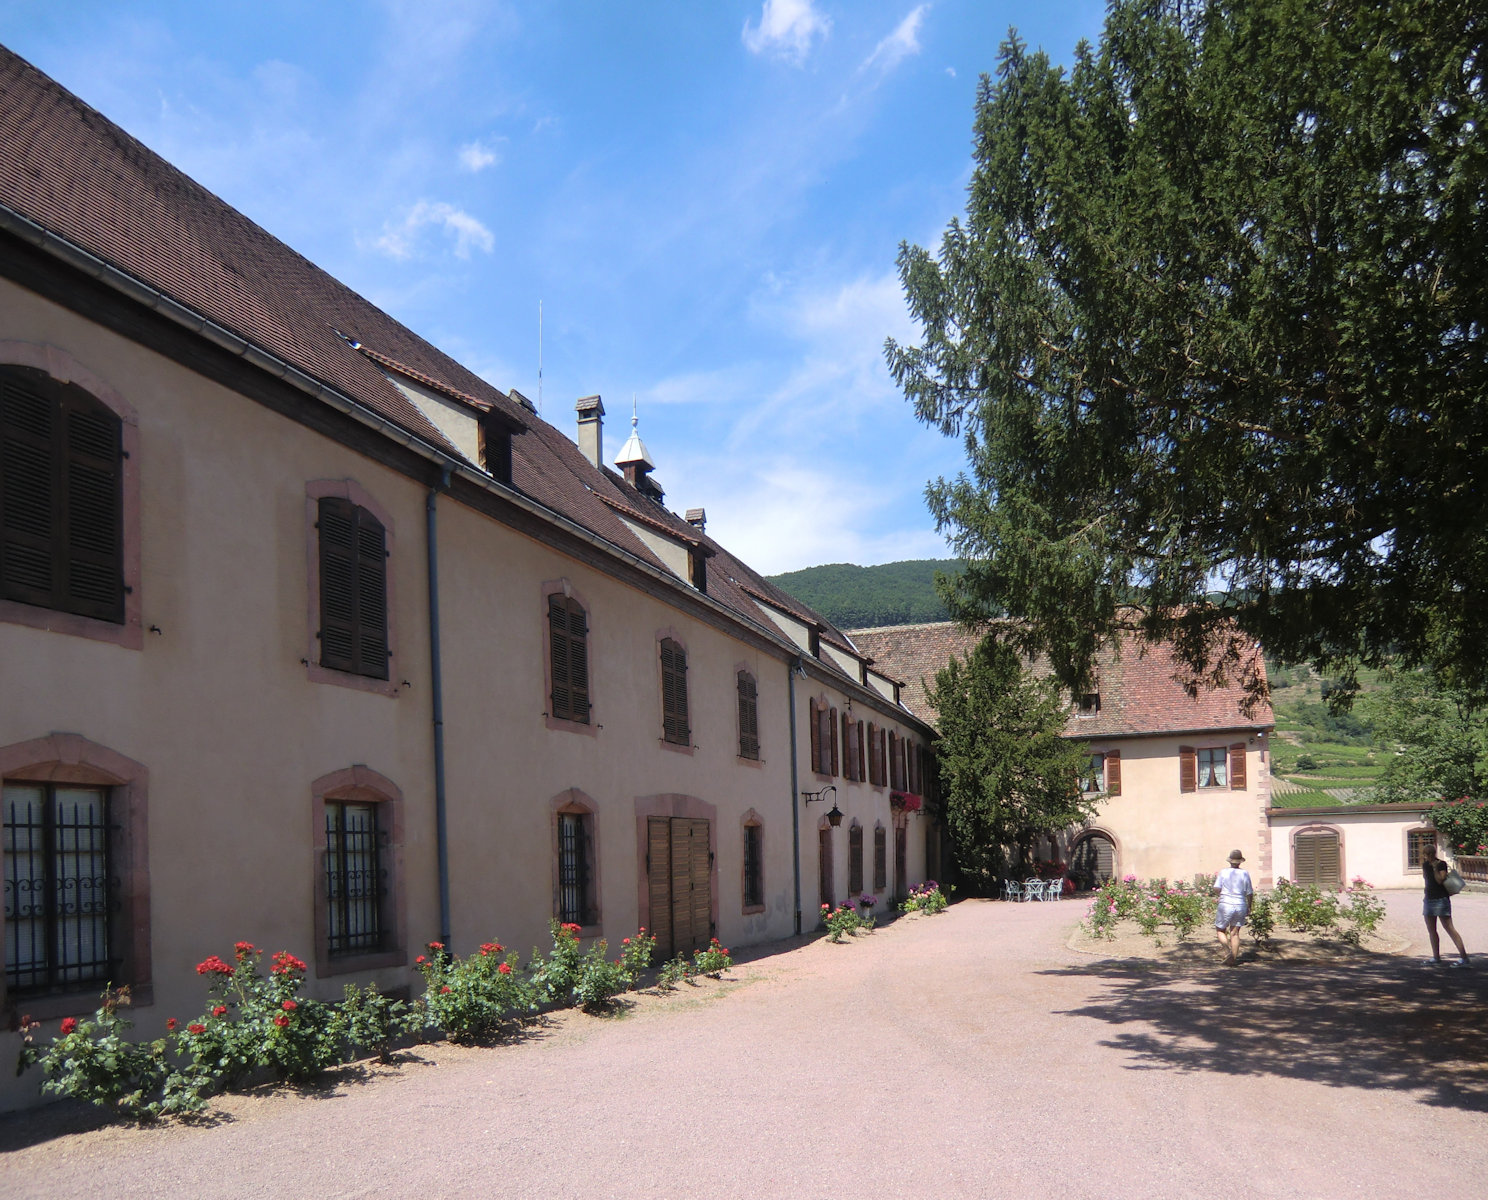 ehemaliges Kloster in Kientzheim, heute ein Weingut in Privatbesitz